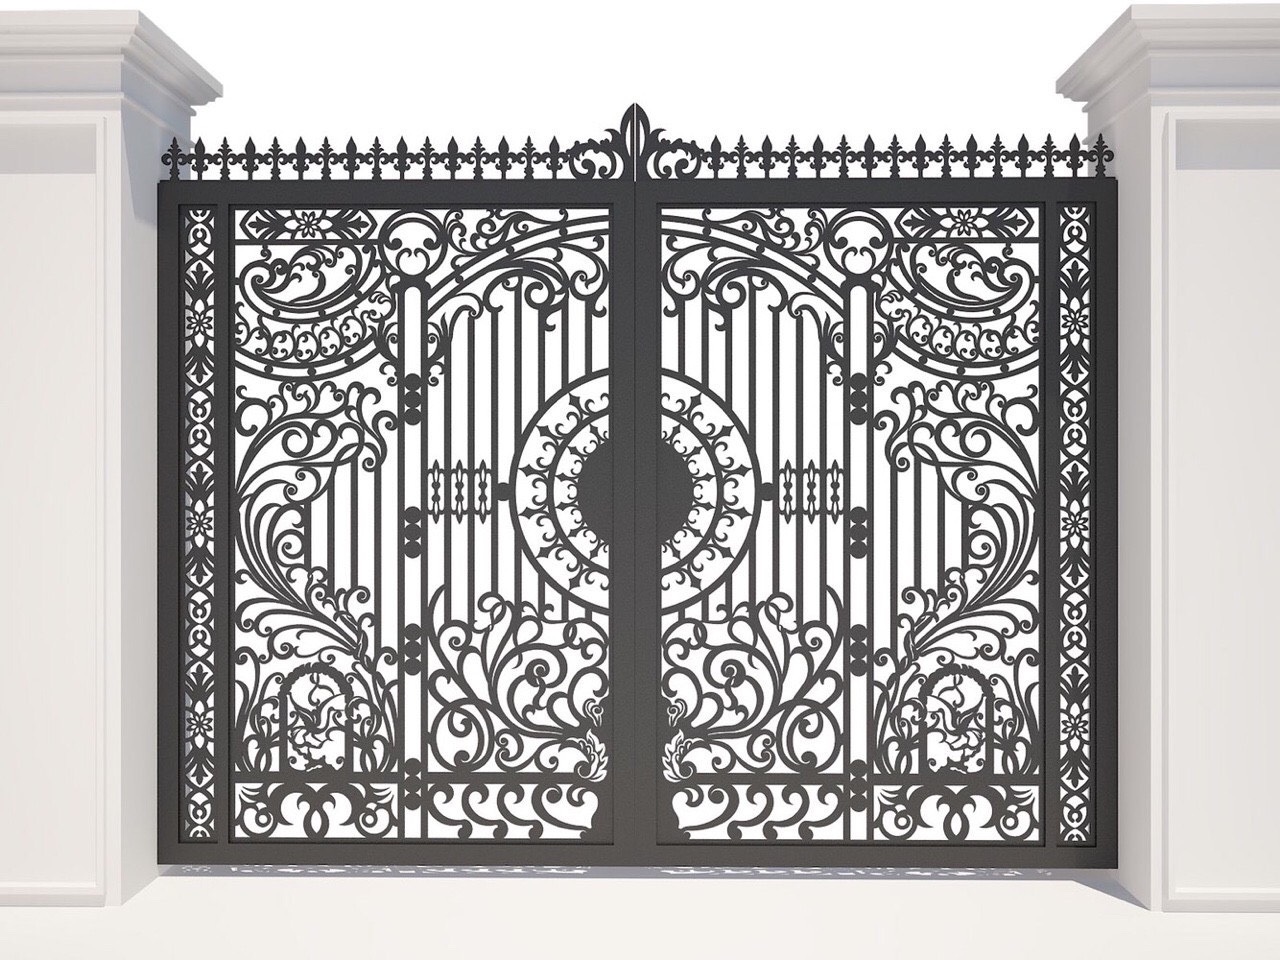 10 Mẫu cổng sắt nghệ thuật phù hợp kiến trúc nhà biệt thự | Tư vấn thiết kế